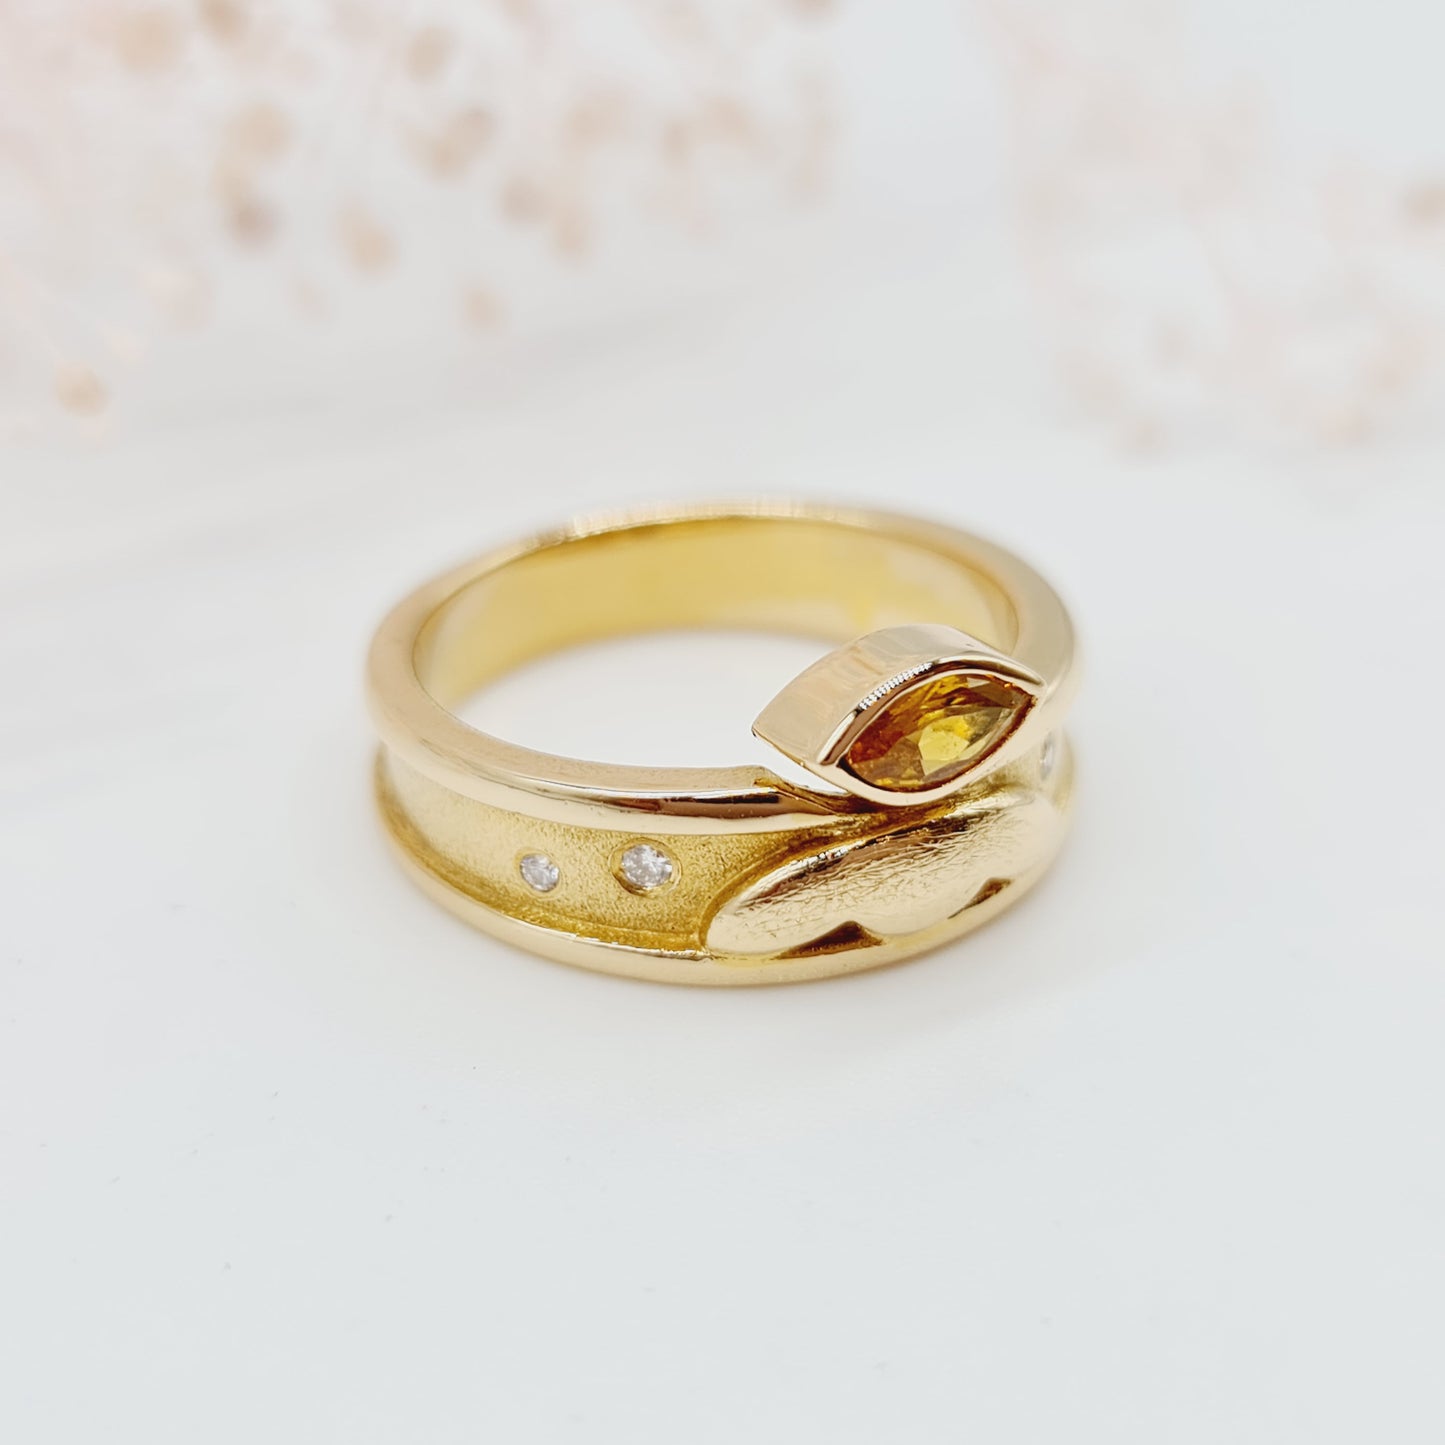 Einzigartiger handgeschmiedeter Vintage-Ring mit Zitrin im Navettschliff und Brillanten, aus 750 18 kt Gelbgold